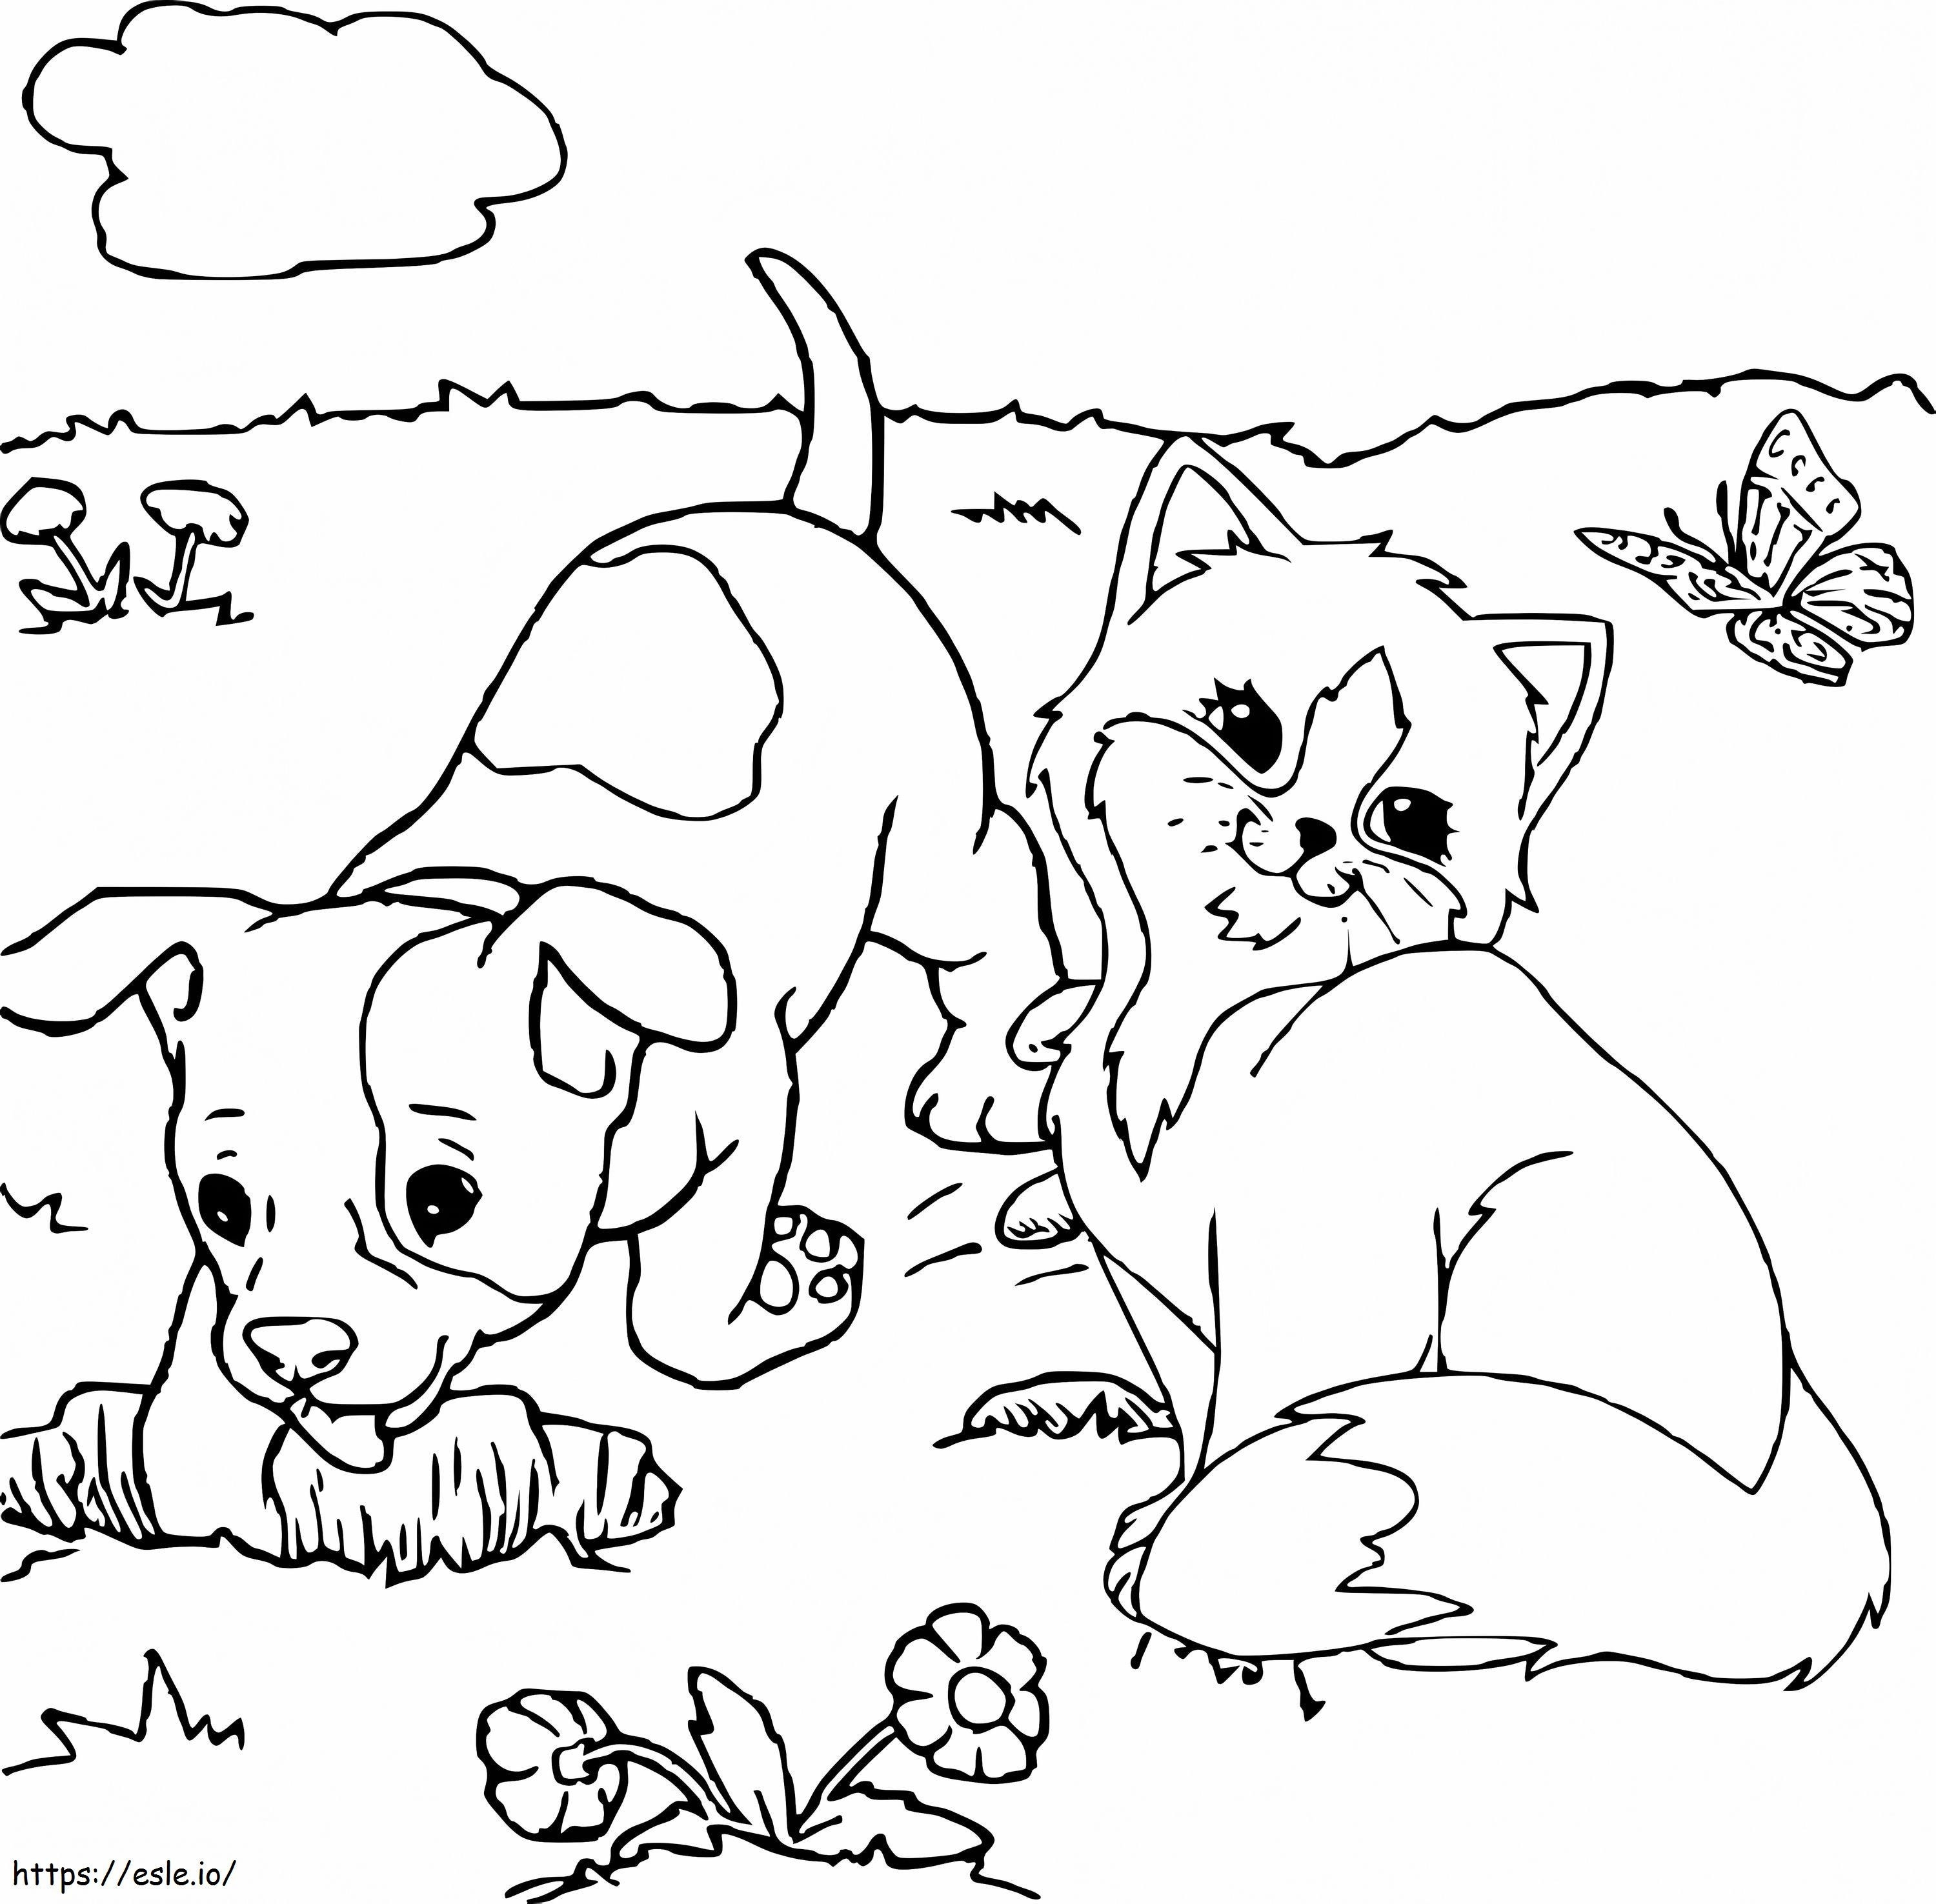 Gatto e cane adorabili da colorare